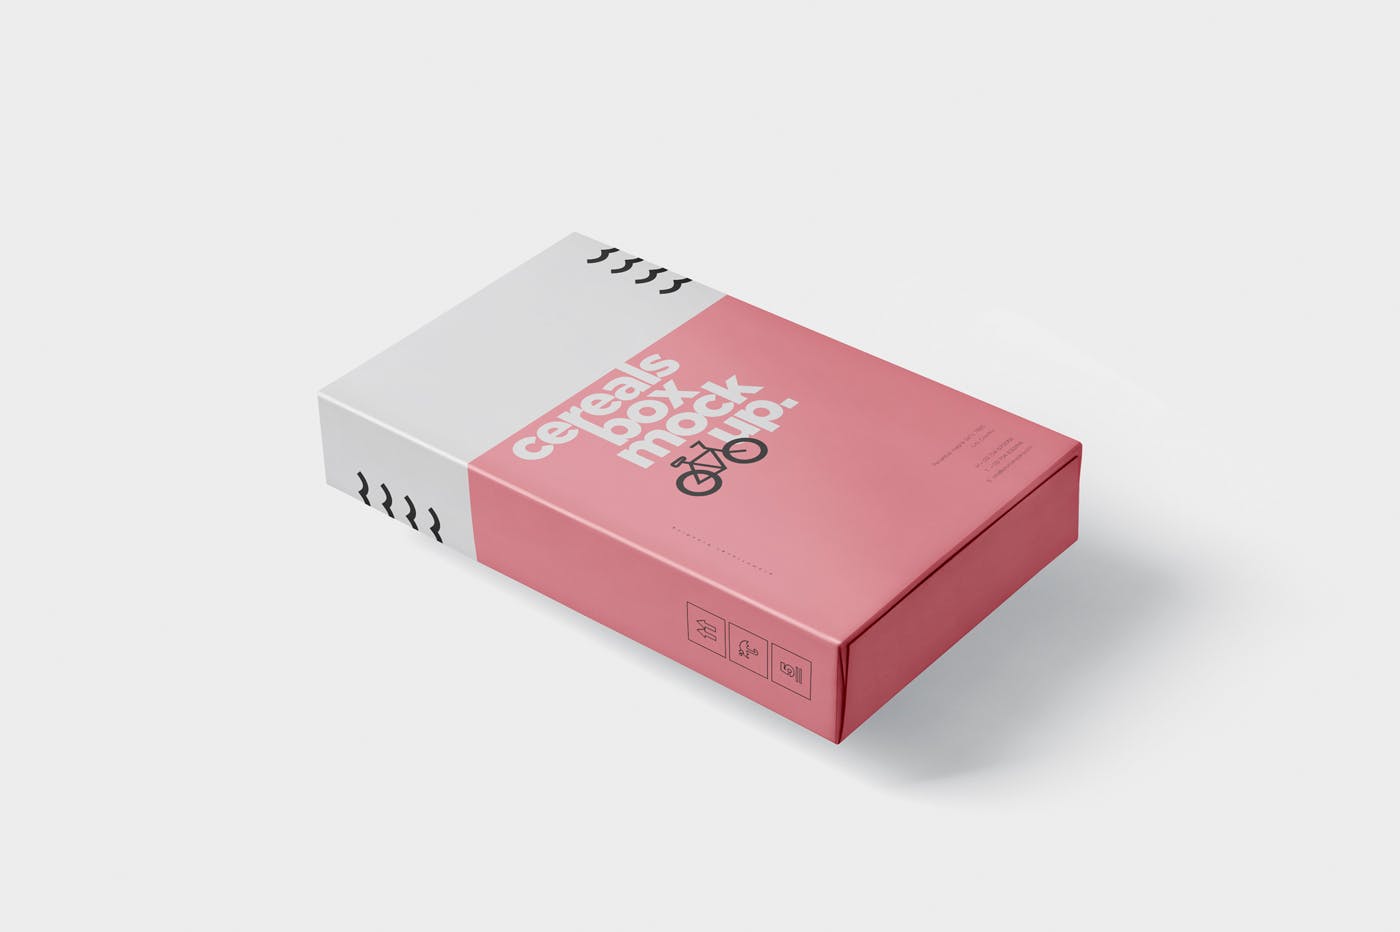 香烟/避孕套/扑克牌适用的超薄包装盒外观设计样机 Cereals Box Mockup – Slim Size Box插图4